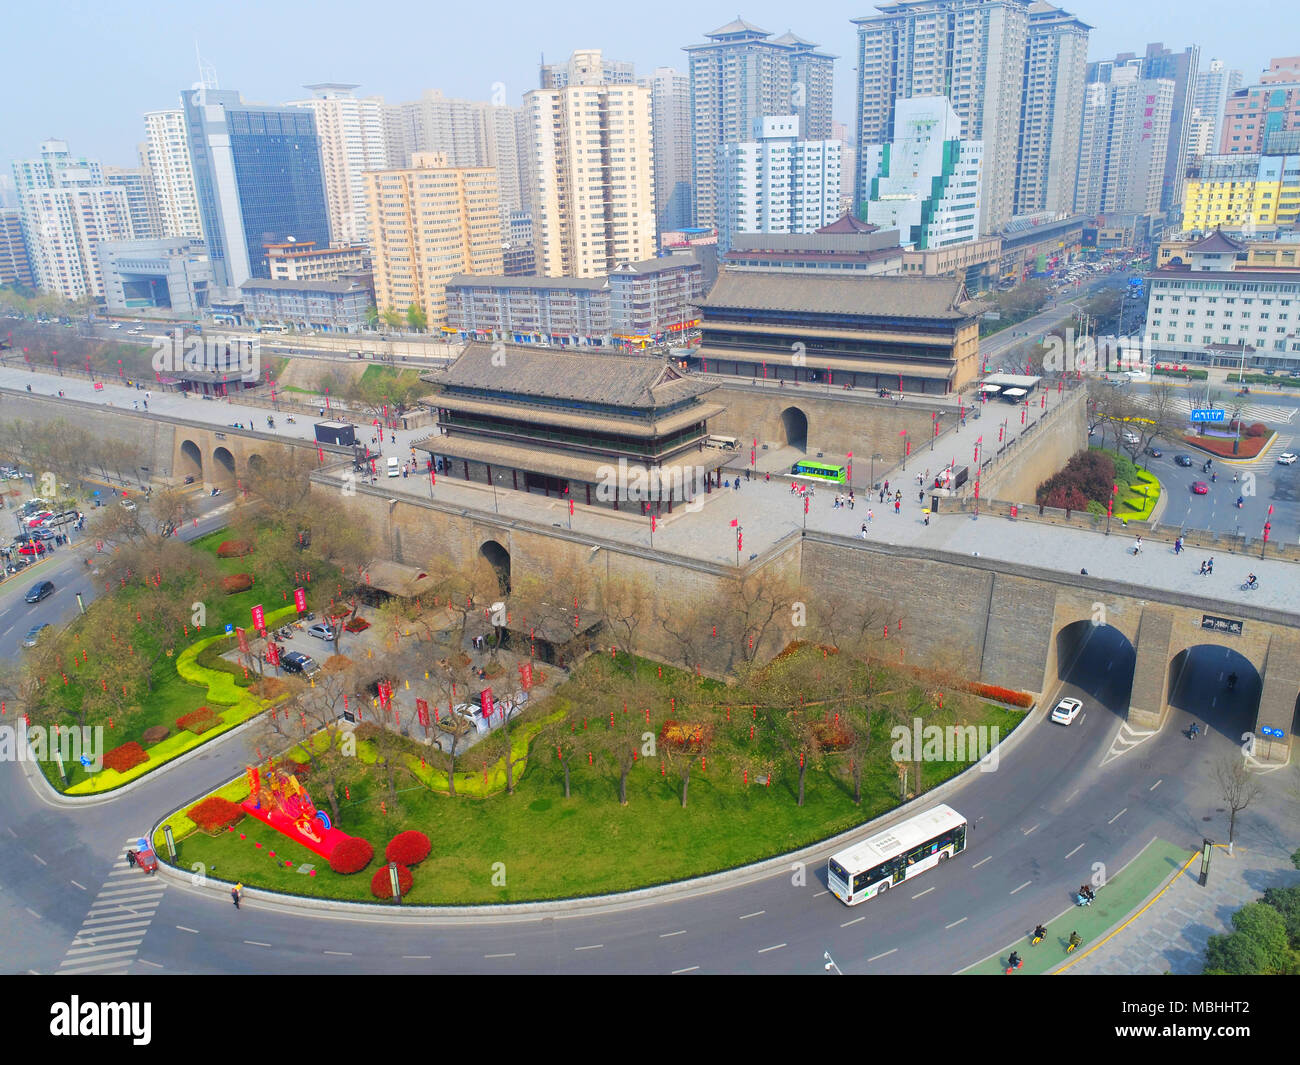 7 avril 2018 - Xi'An, Xi'an, Chine - Xi'an, Chine 7 avril 2018 : photographie aérienne de Xi'an, province du Shaanxi du nord-ouest de la Chine. Crédit : SIPA Asie/ZUMA/Alamy Fil Live News Banque D'Images